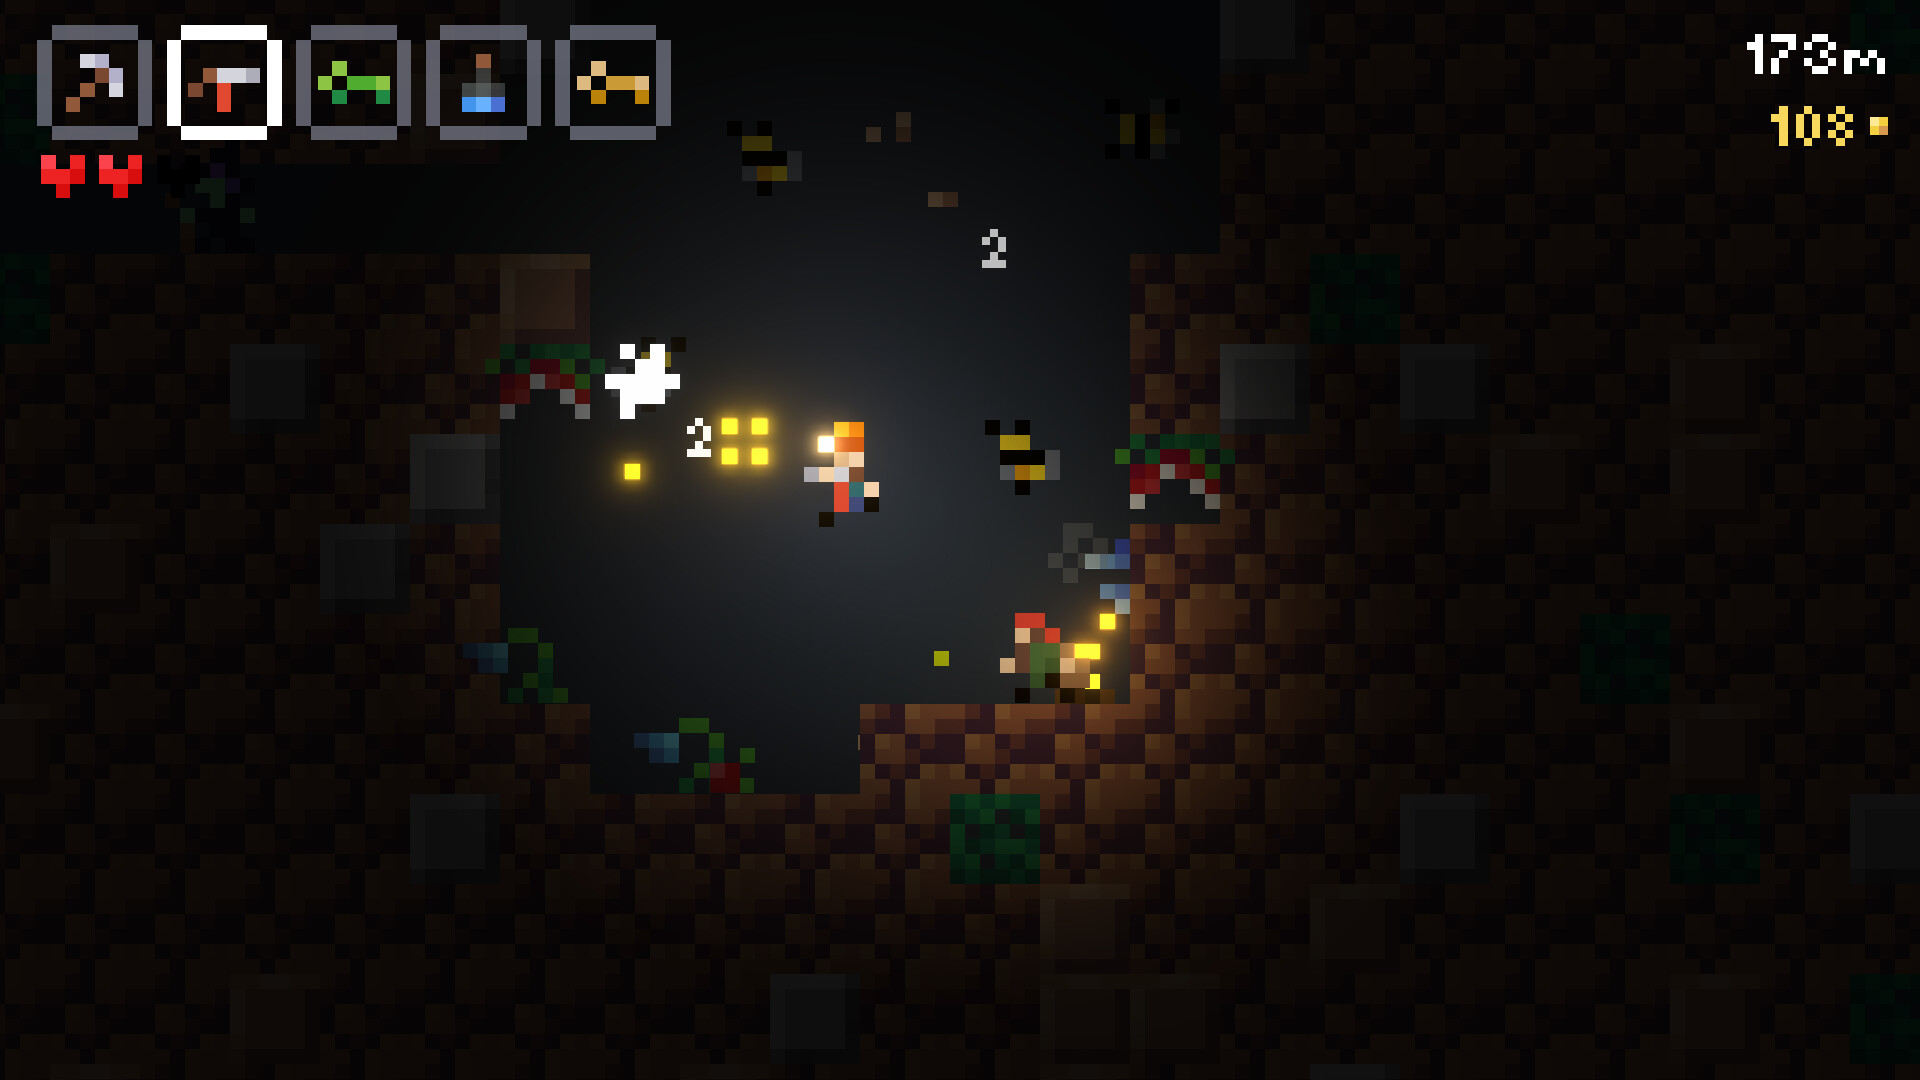 Caverns Featured Screenshot #1